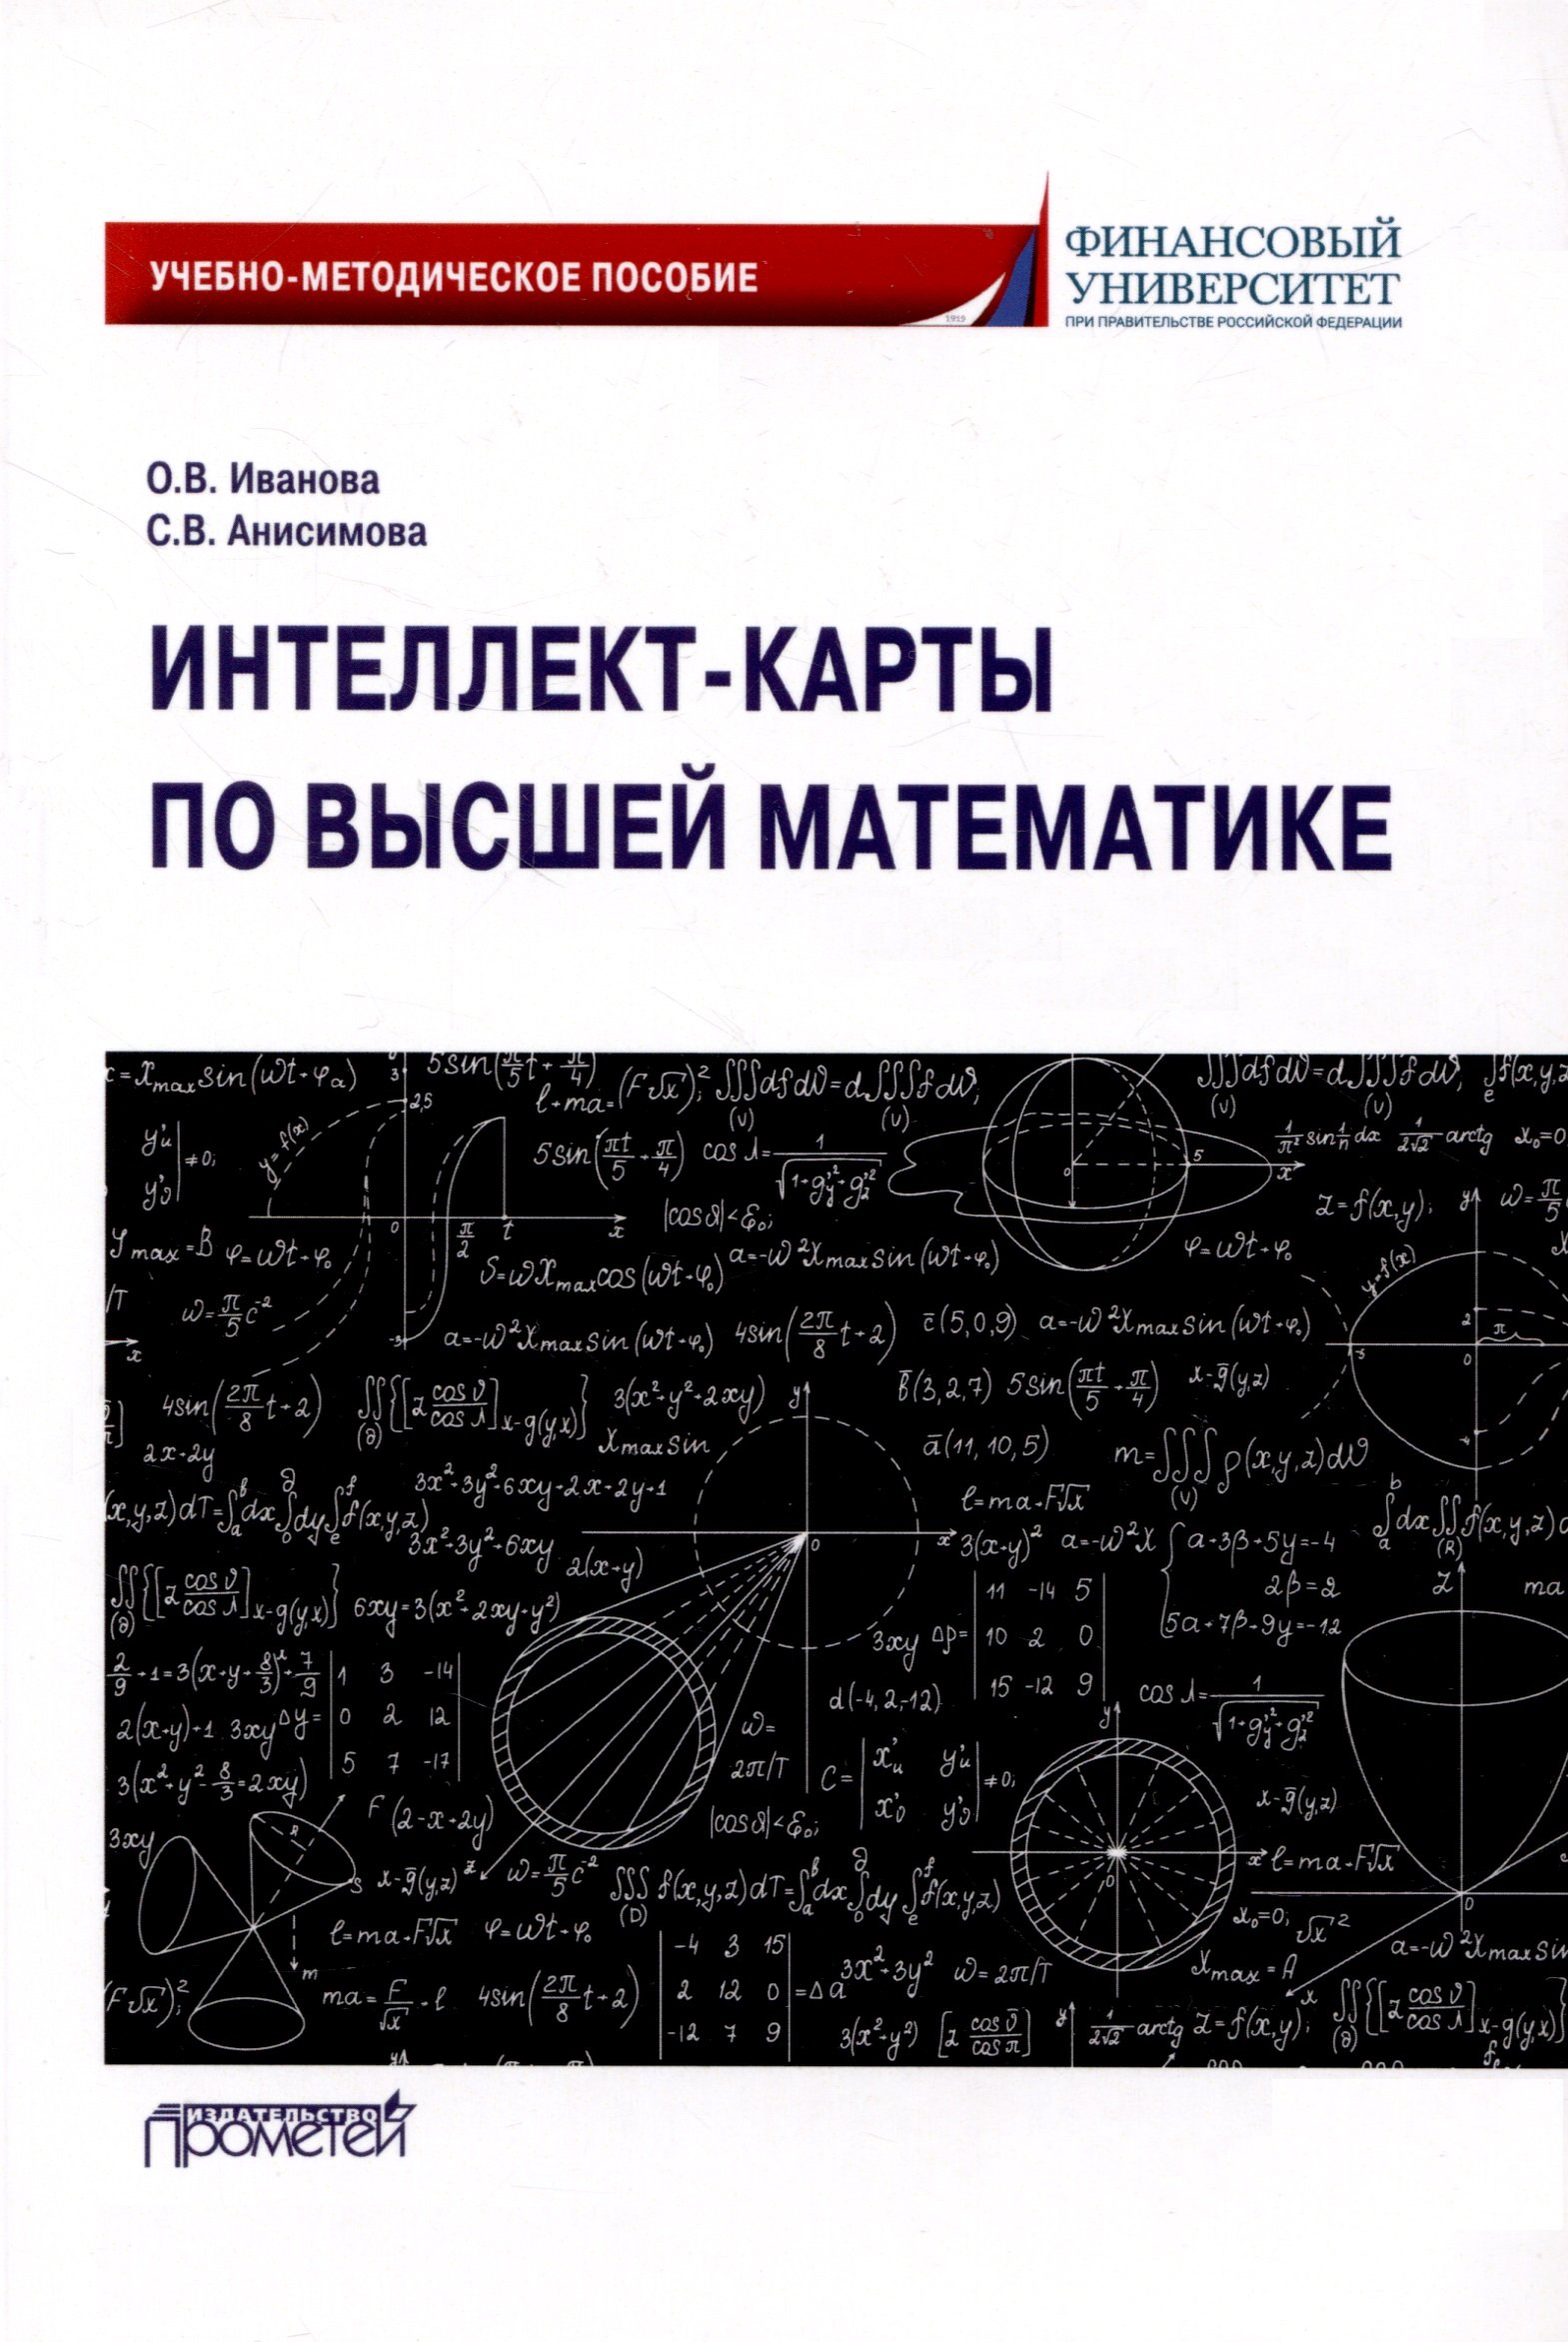 Интеллект-карты по высшей математике: Учеб.-метод. пособие